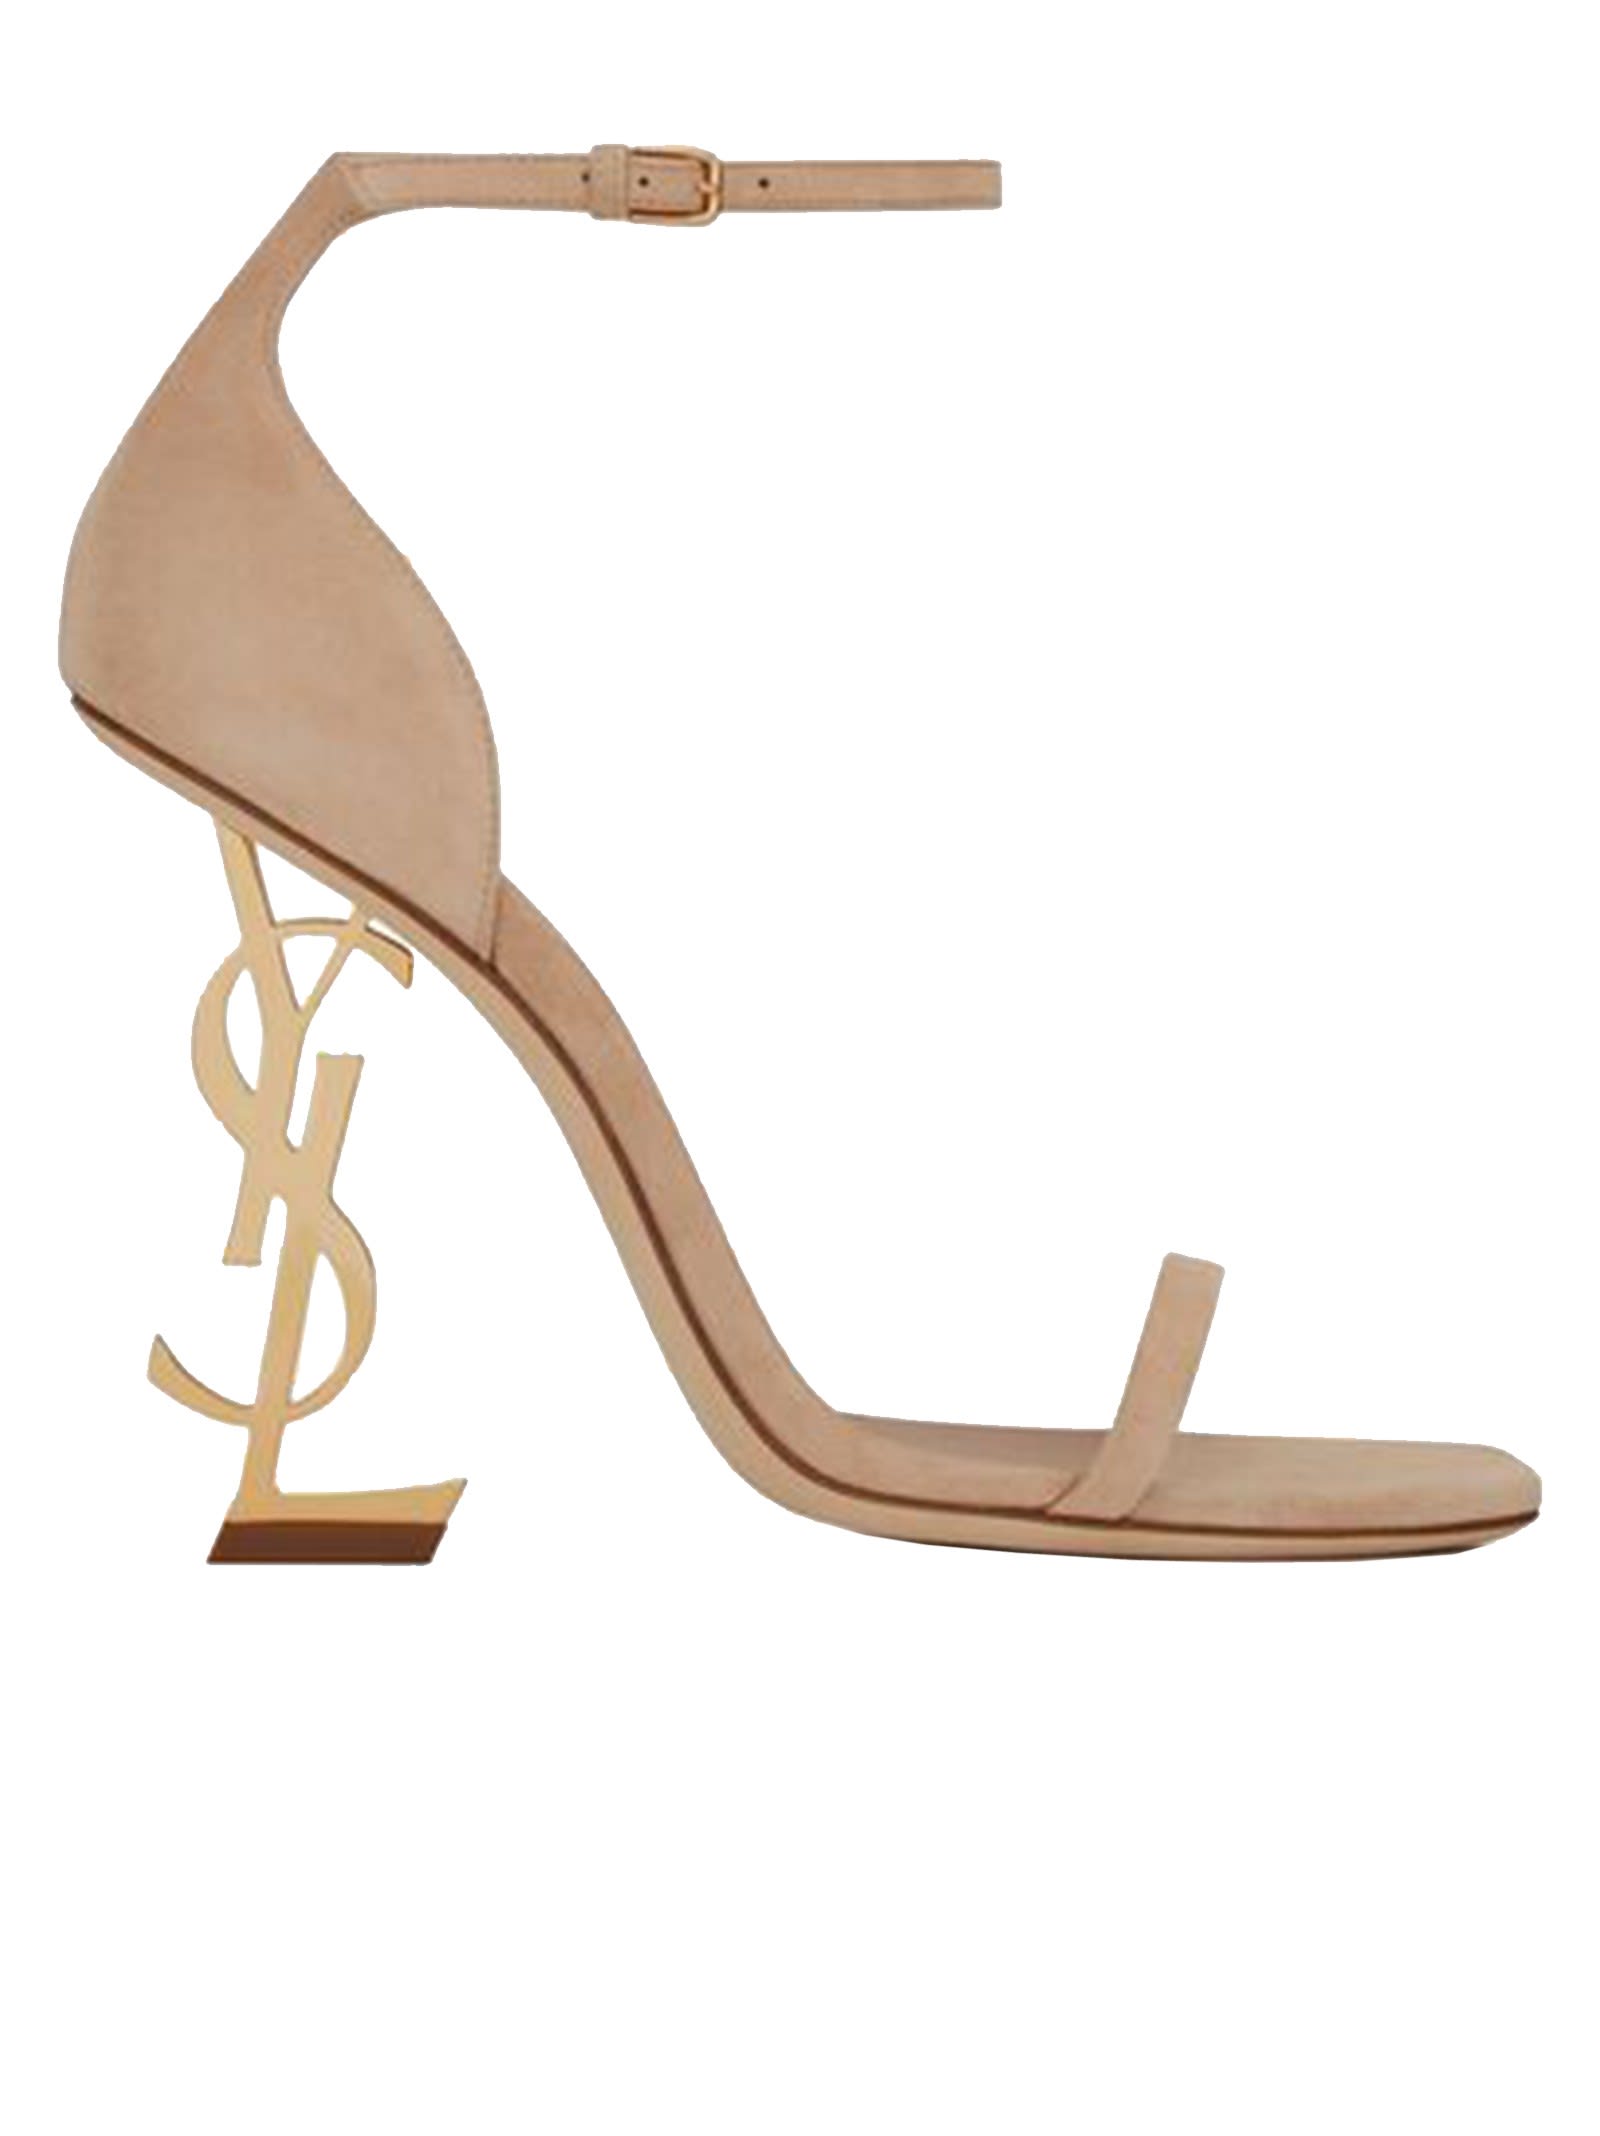 Buy Saint Laurent 557662 0lijj 2736 Opyum Powder Suede Sandals online, shop Saint Laurent shoes with free shipping